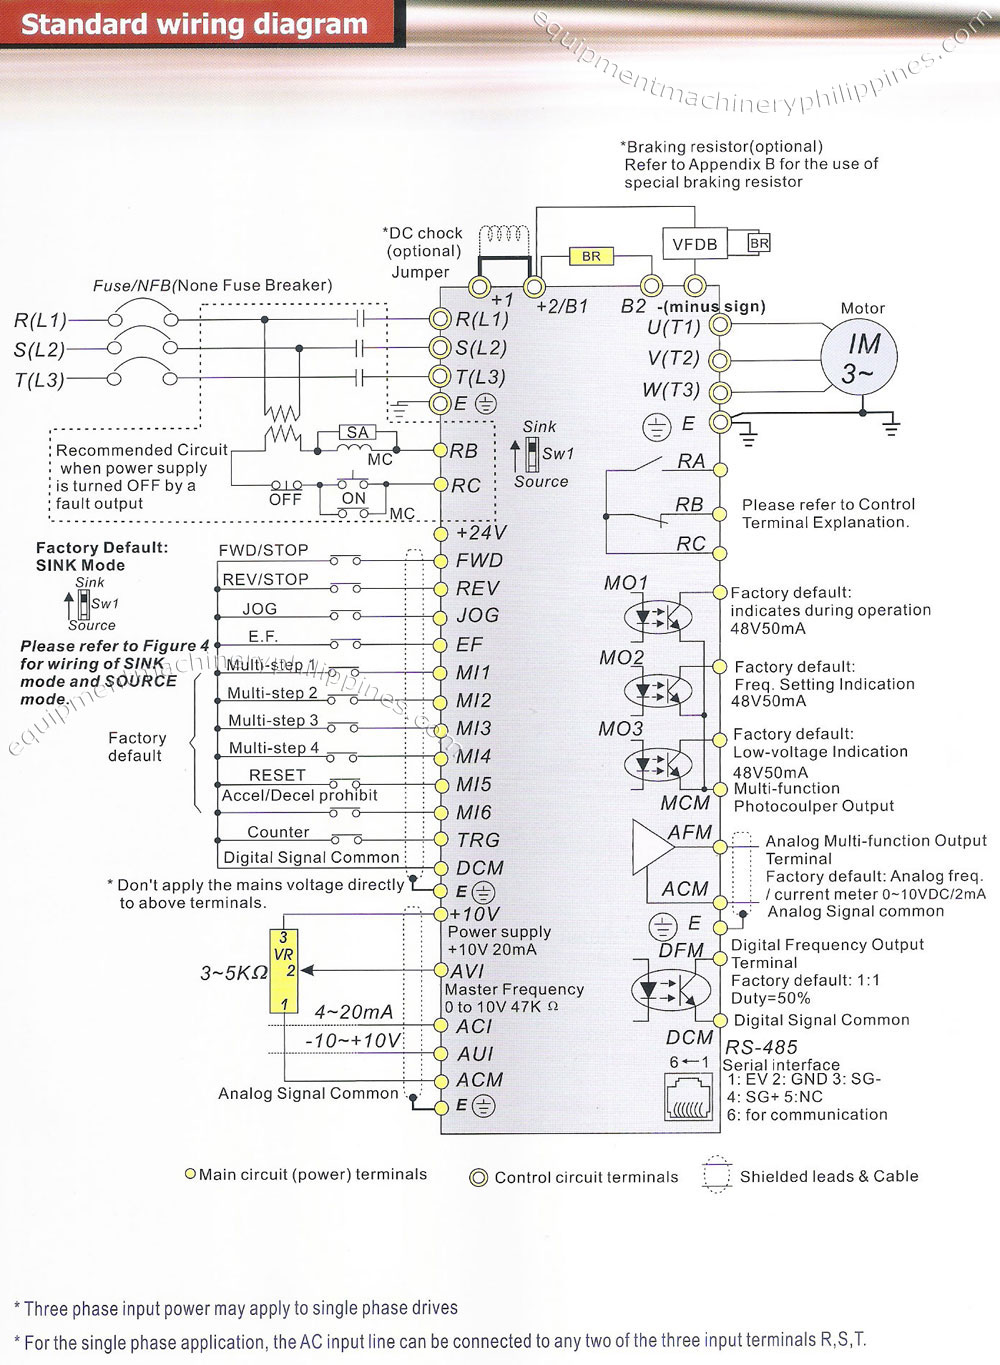 Delta VFD B Series Standard Wiring Diagram Philippines